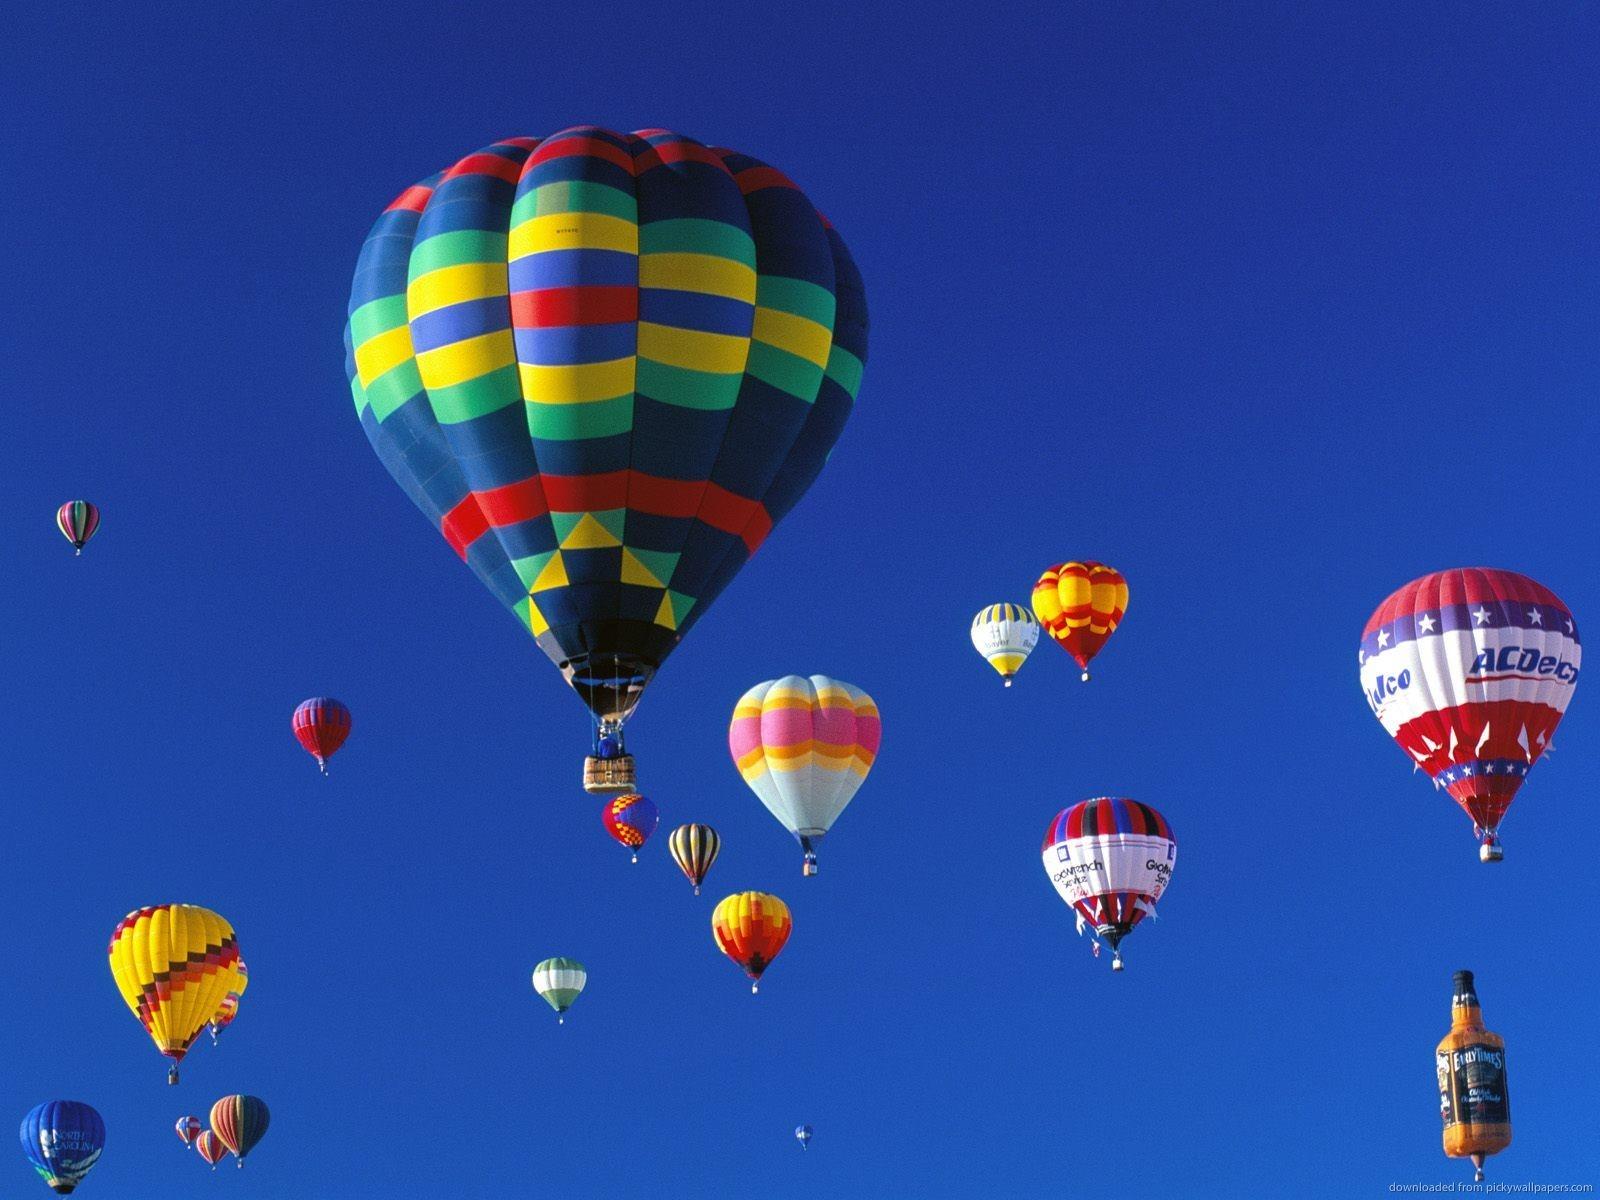 Sky: Hot Air Balloons Fair Albuquerque International Balloon Fiesta